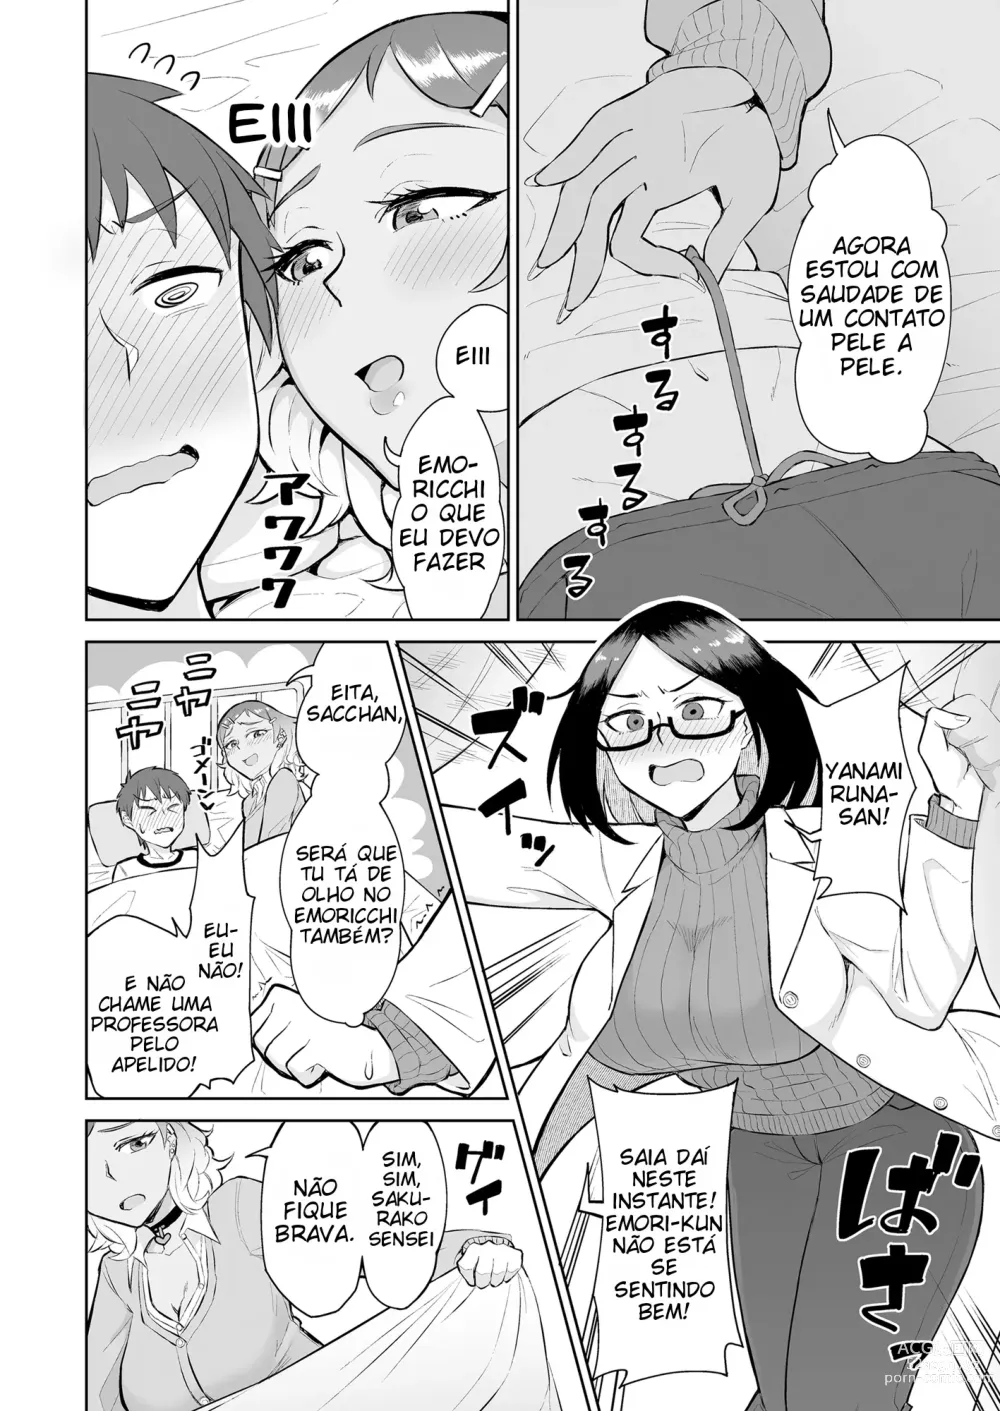 Page 5 of doujinshi Sendo espremido na enfermaria por uma gyaru e uma enfermeira virgem